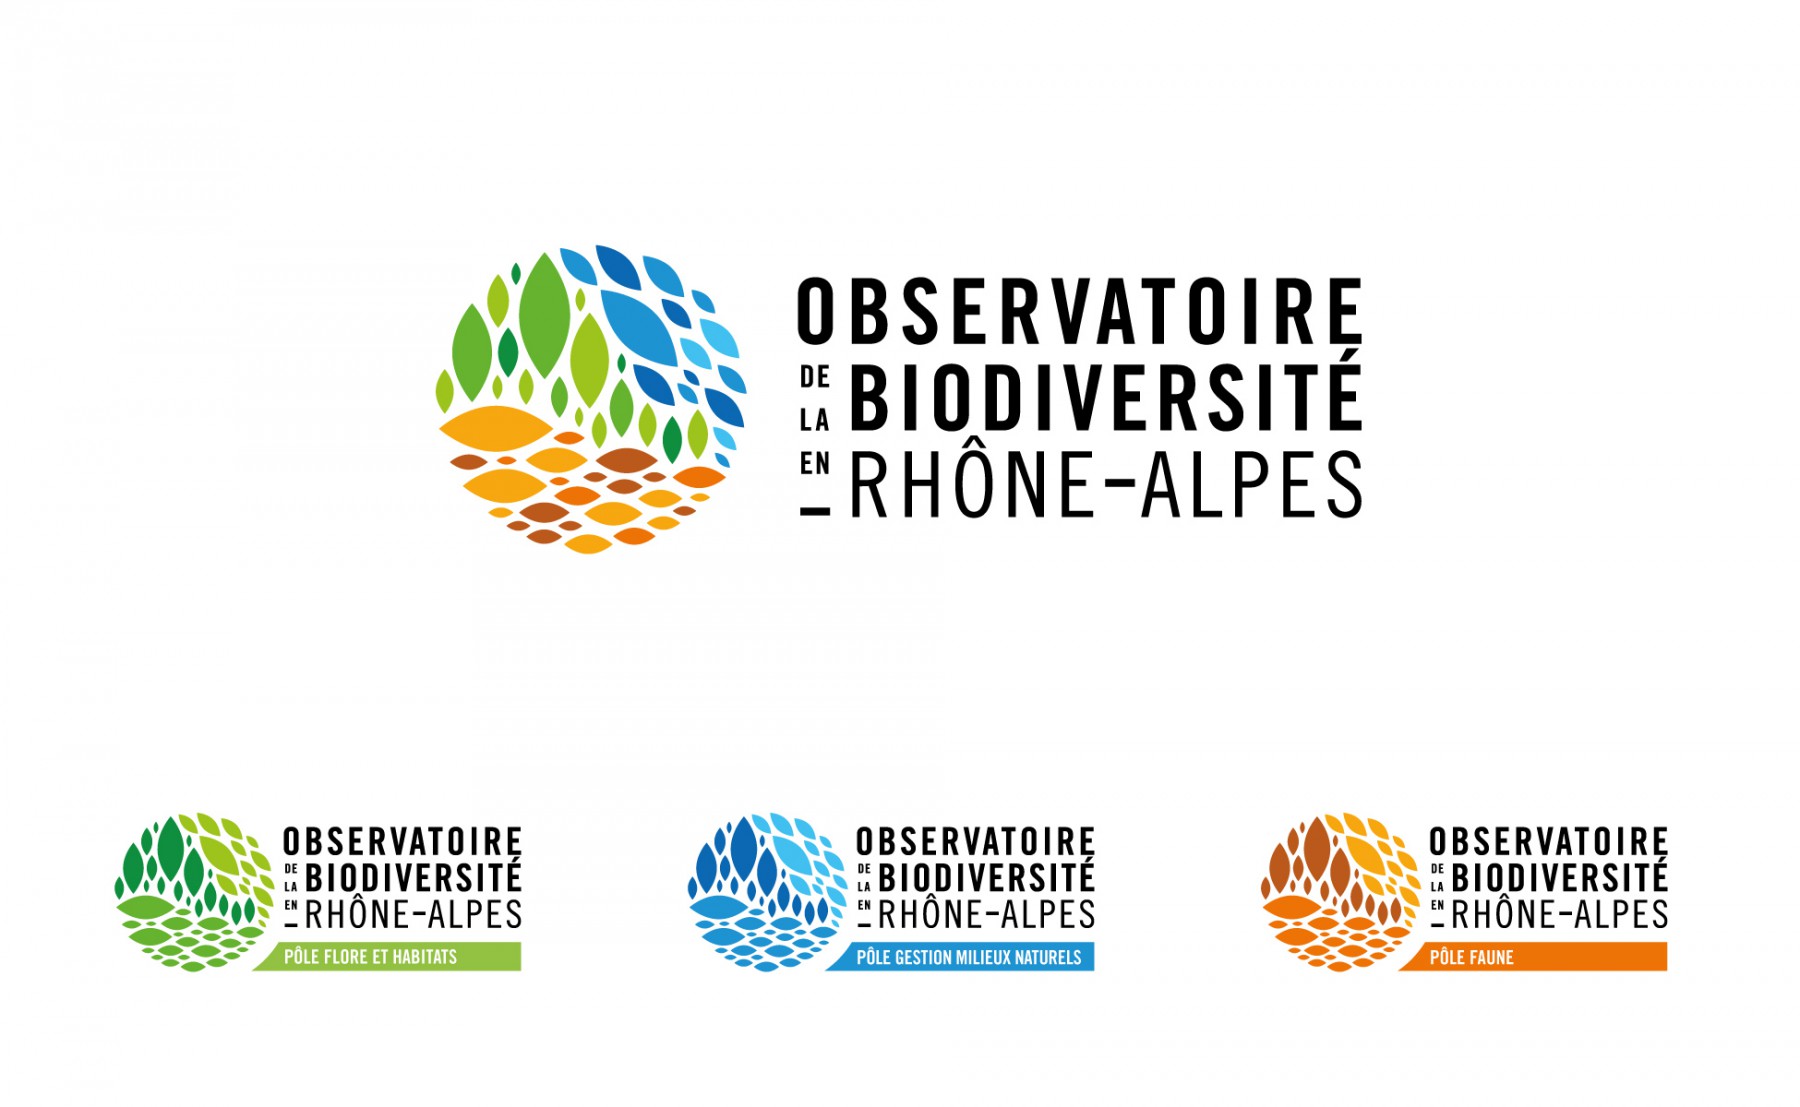 Branding for biodiversity organisation